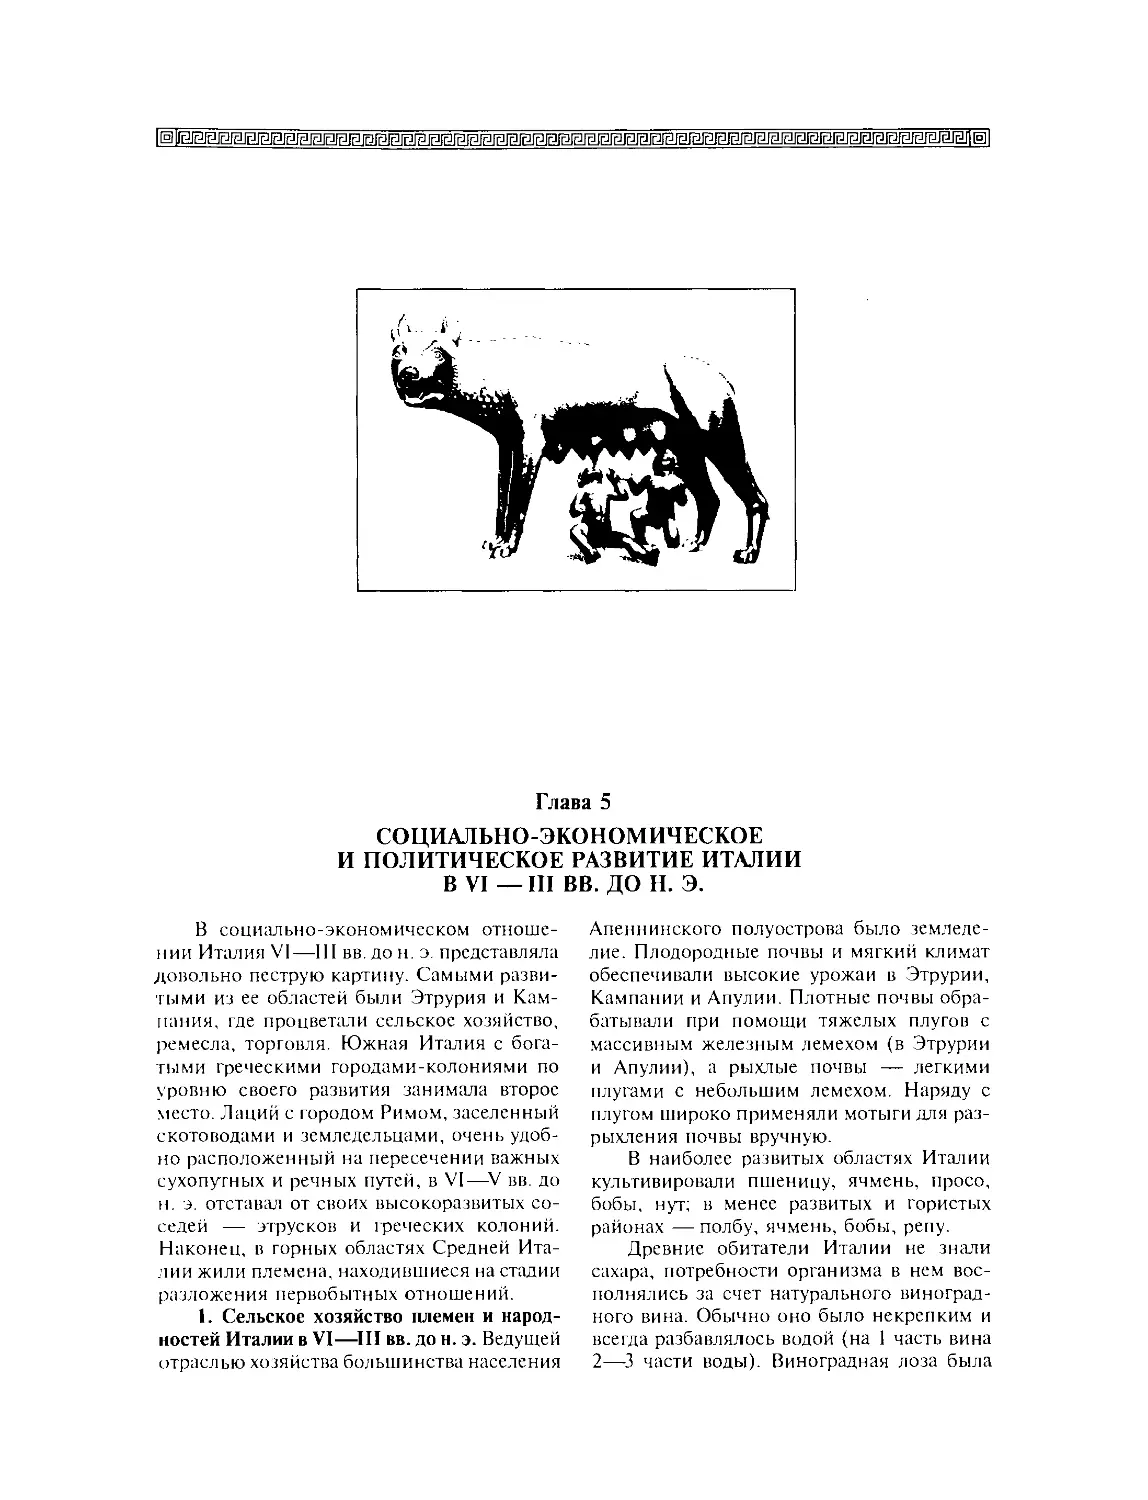 Сельское хозяйство племен и народностей Италии в VI—III вв. до н. э.